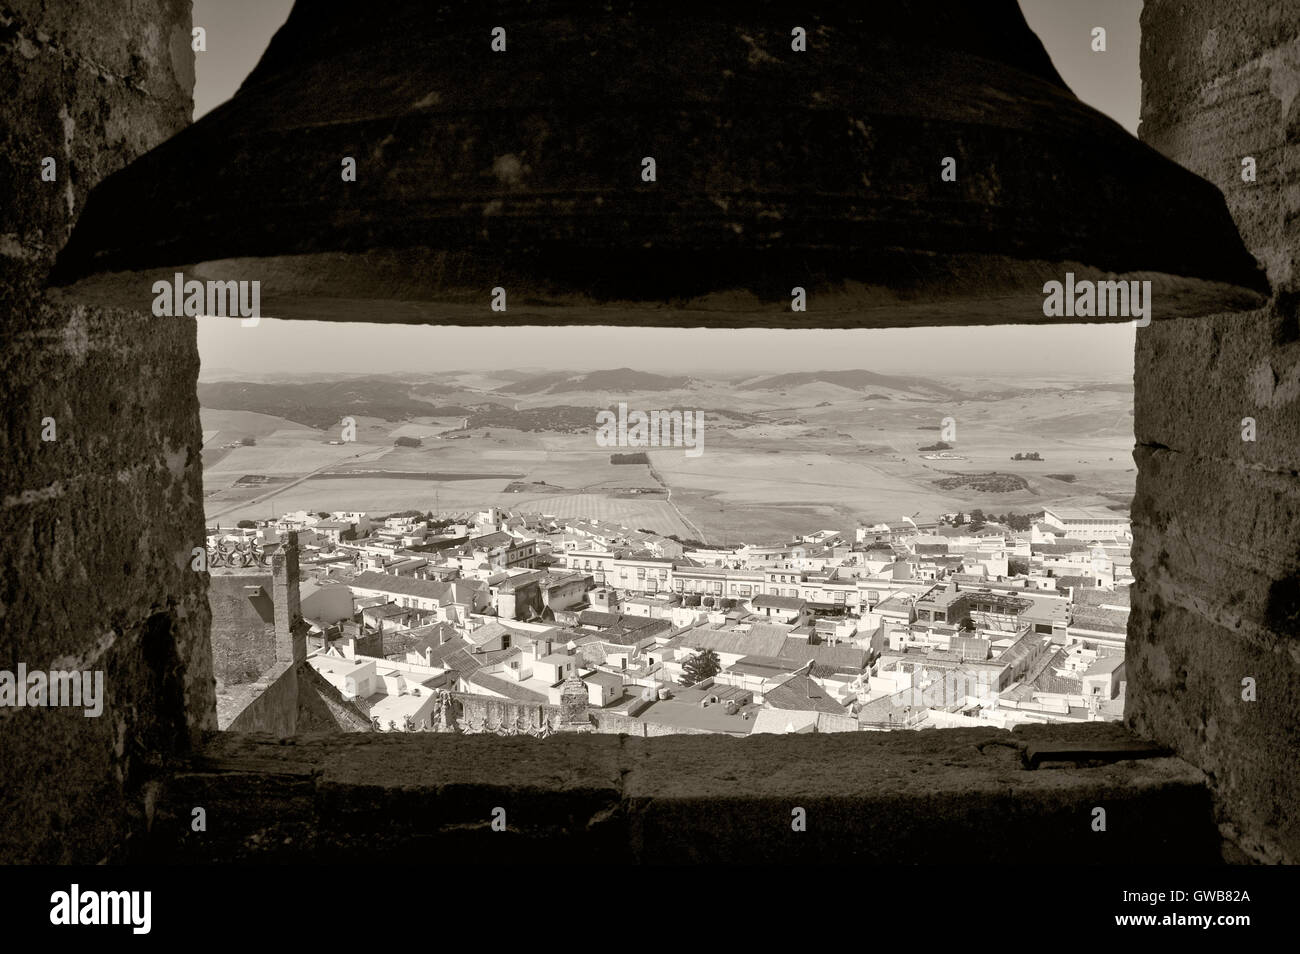 Villaggio andaluso vista da una torre campanaria in Spagna. Posizione orizzontale Foto Stock